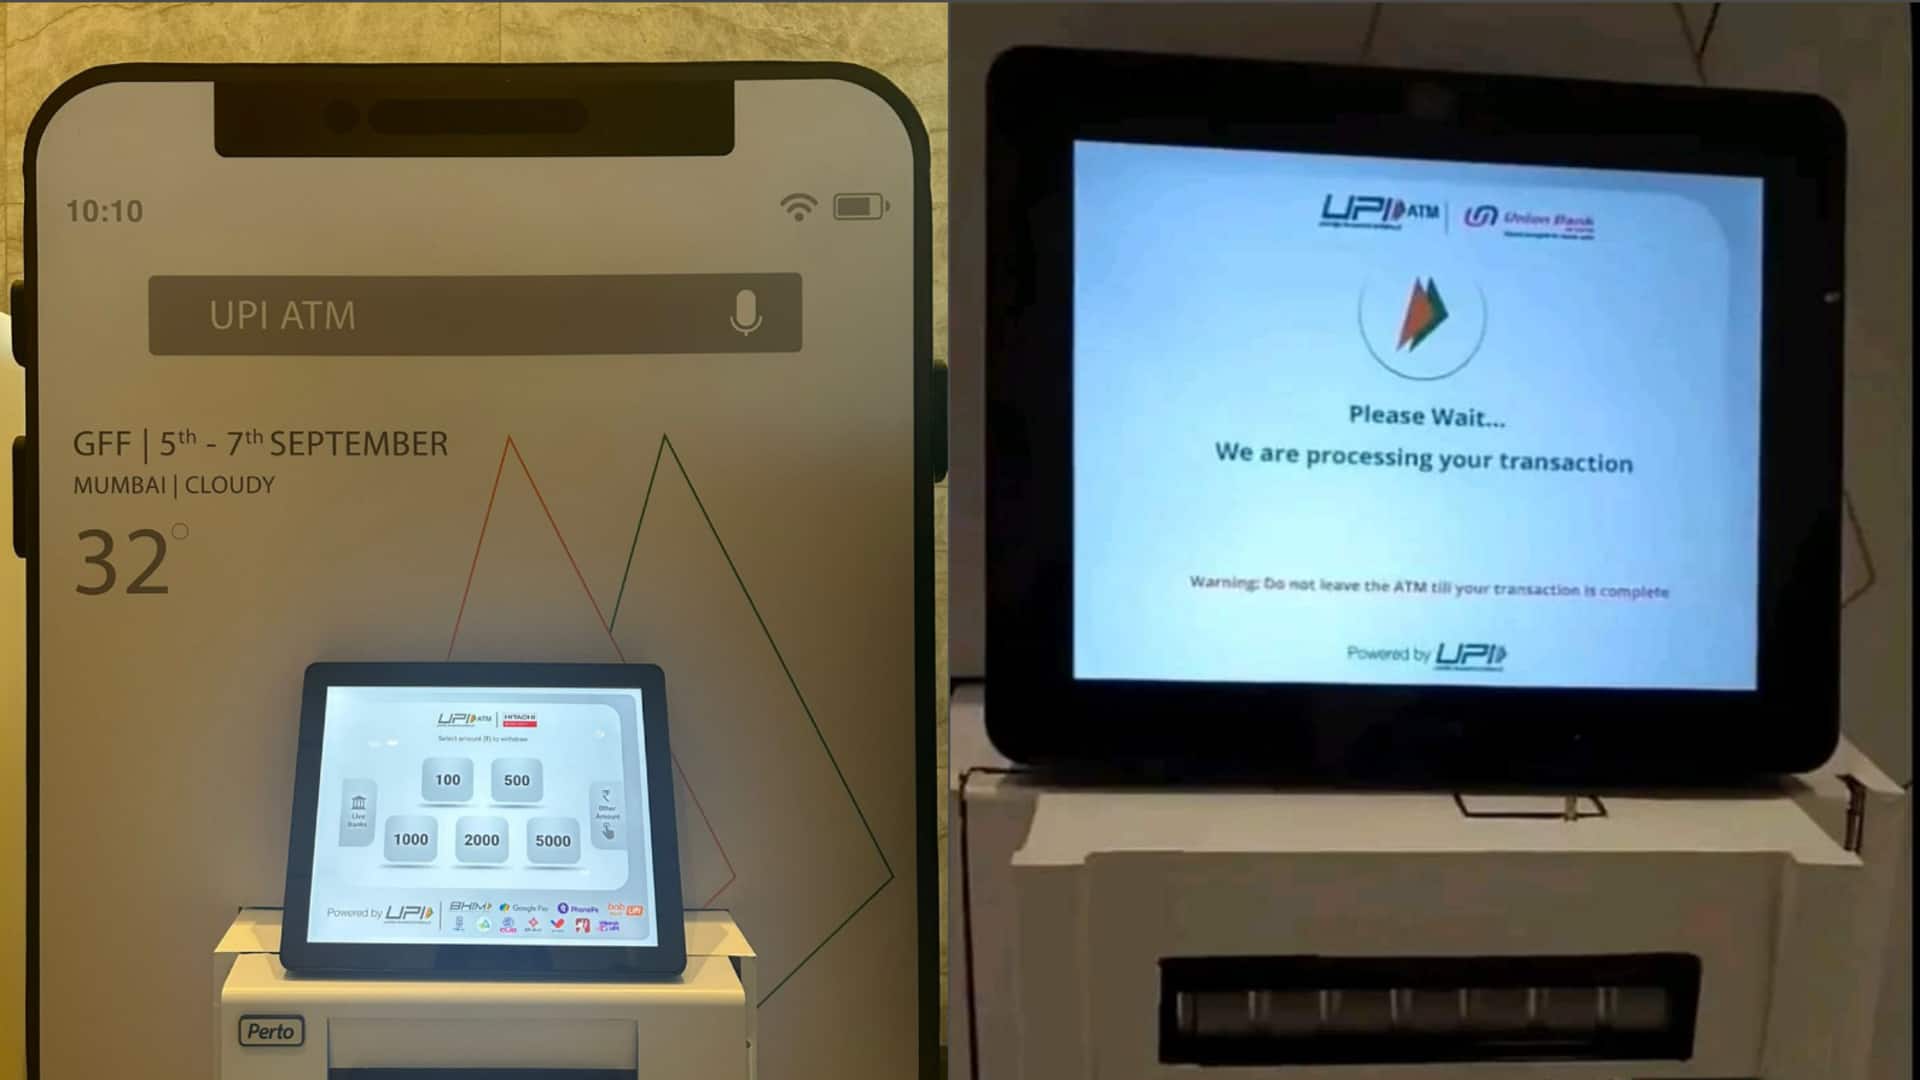 भारत का पहला UPI ATM नियमित ATM से कितना अलग? 